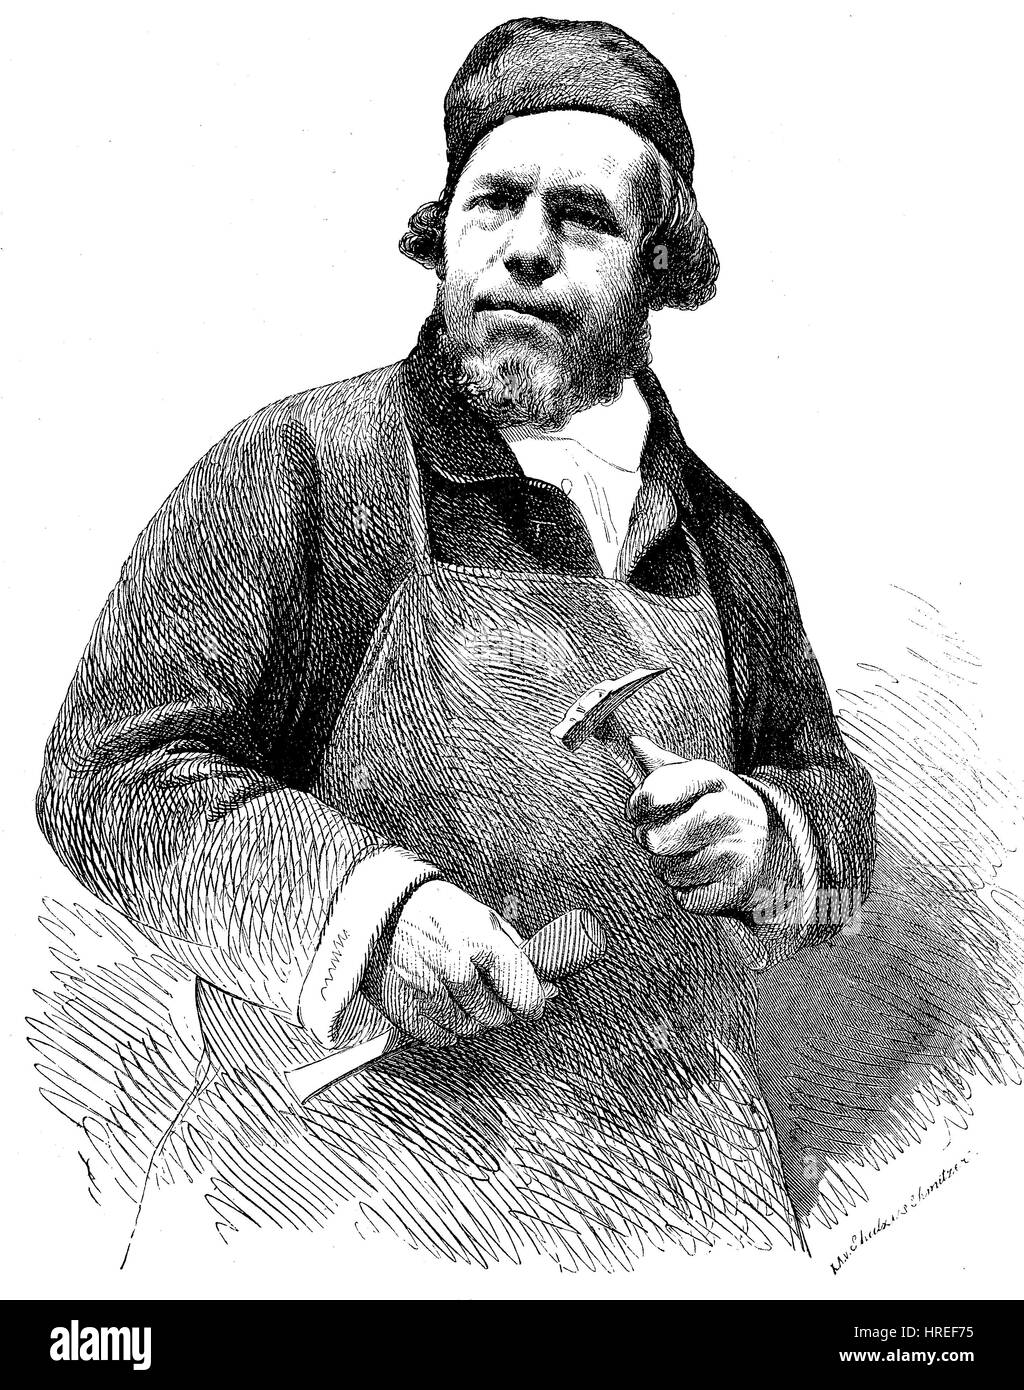 Daniel Jacob Burgschmiet, 11 octobre 1796 - 7 mars 1858, était un sculpteur allemand et fondateur, une photo dans la Gartenlaube, reproduction d'une gravure sur bois du xixe siècle, 1885 Banque D'Images